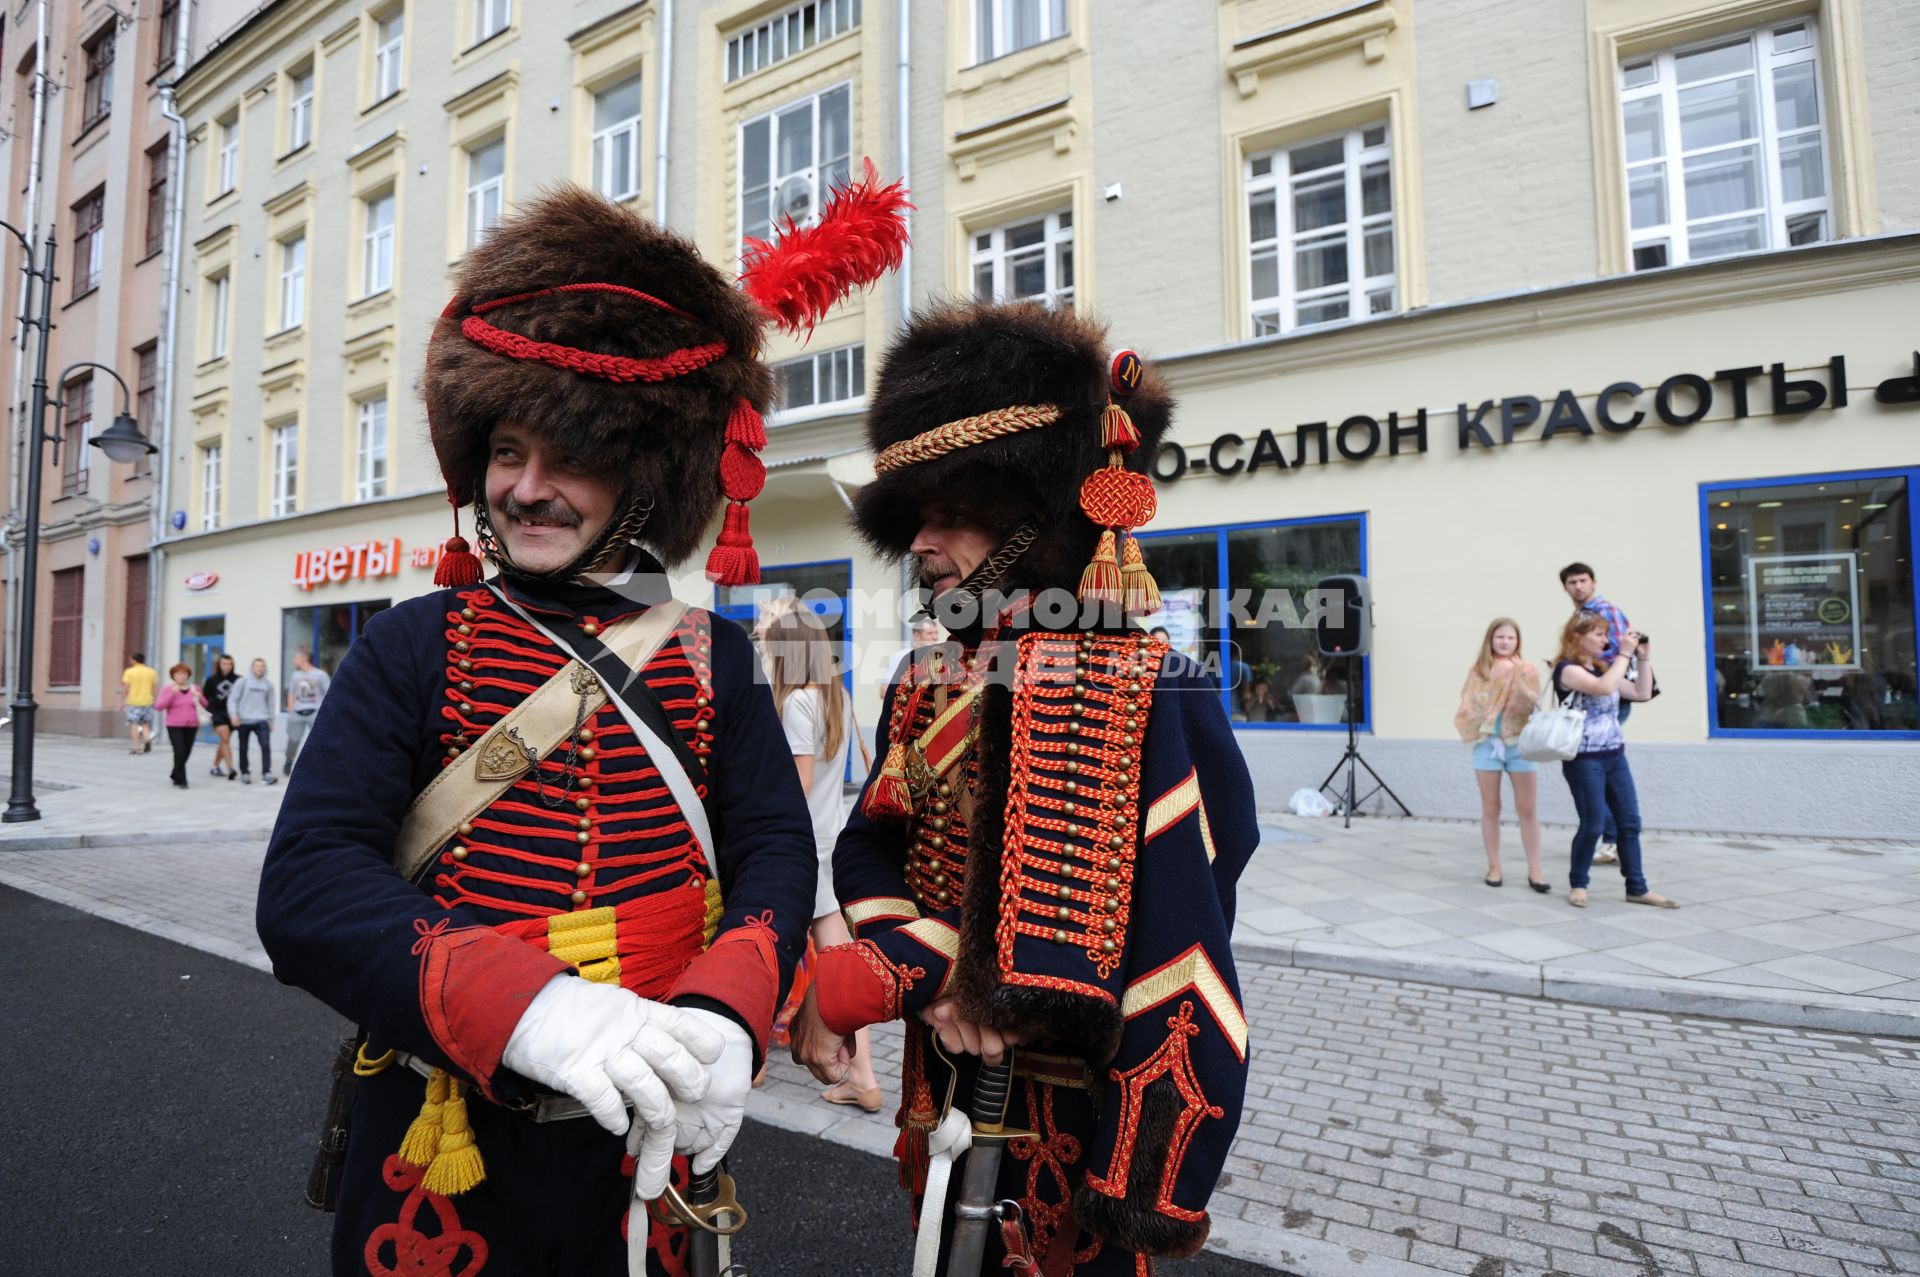 Торжественное открытие пешеходной зоны на улице Пятницкая. На снимке: мужчины в костюмах гусаров.